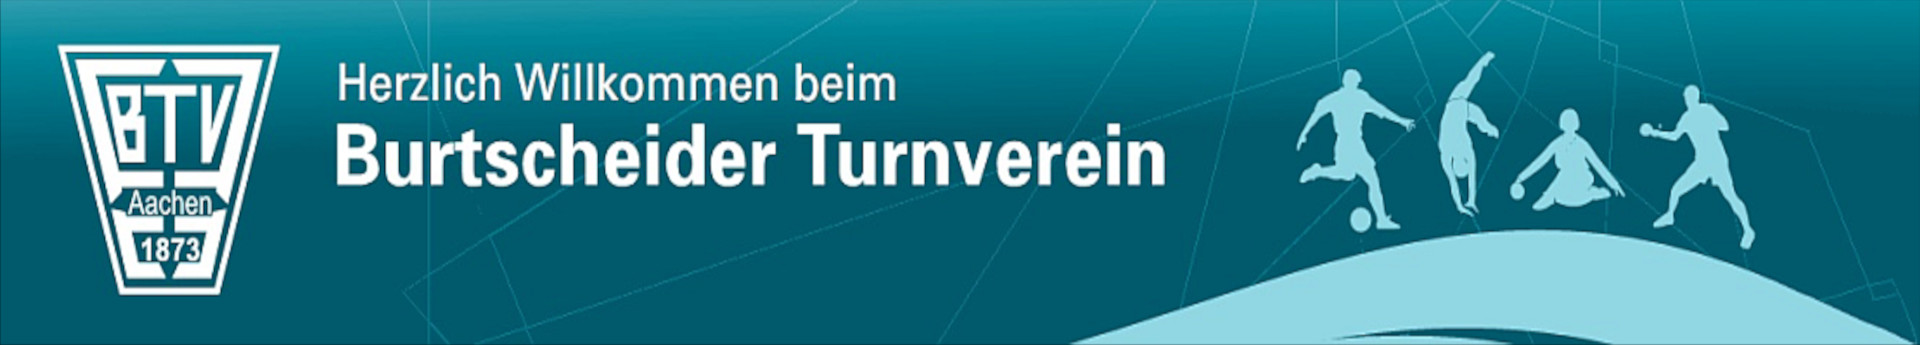 Burtscheider TV Aachen Title Image